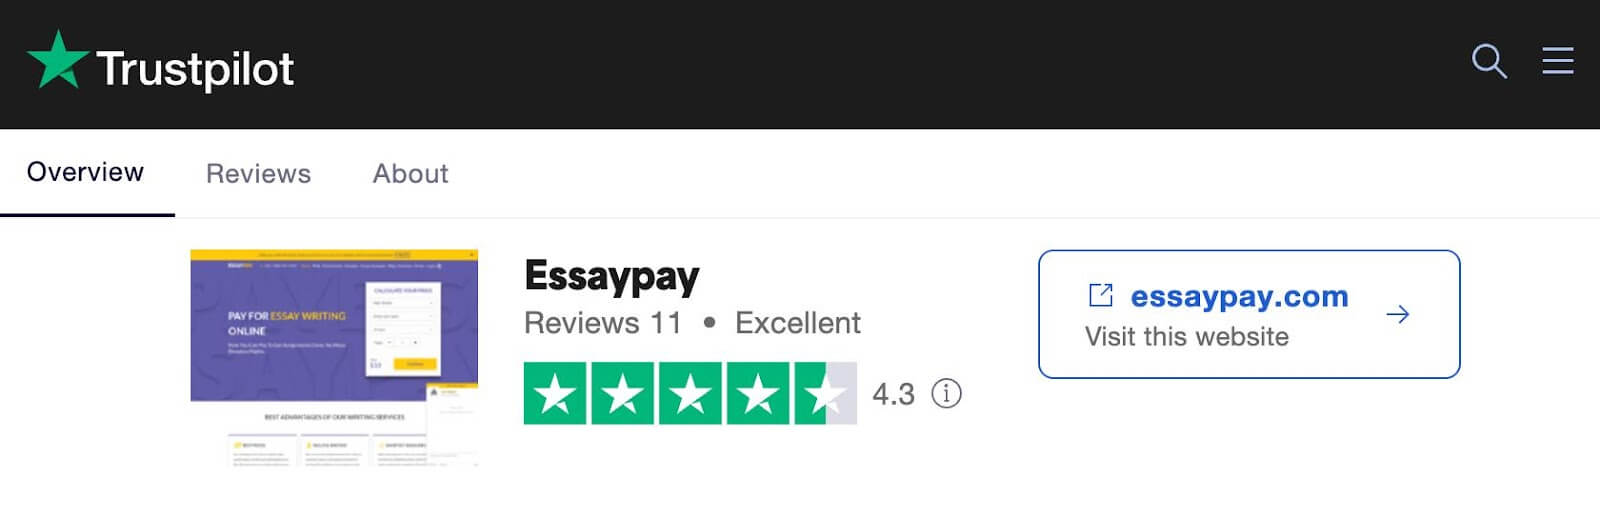 essaypay.com review